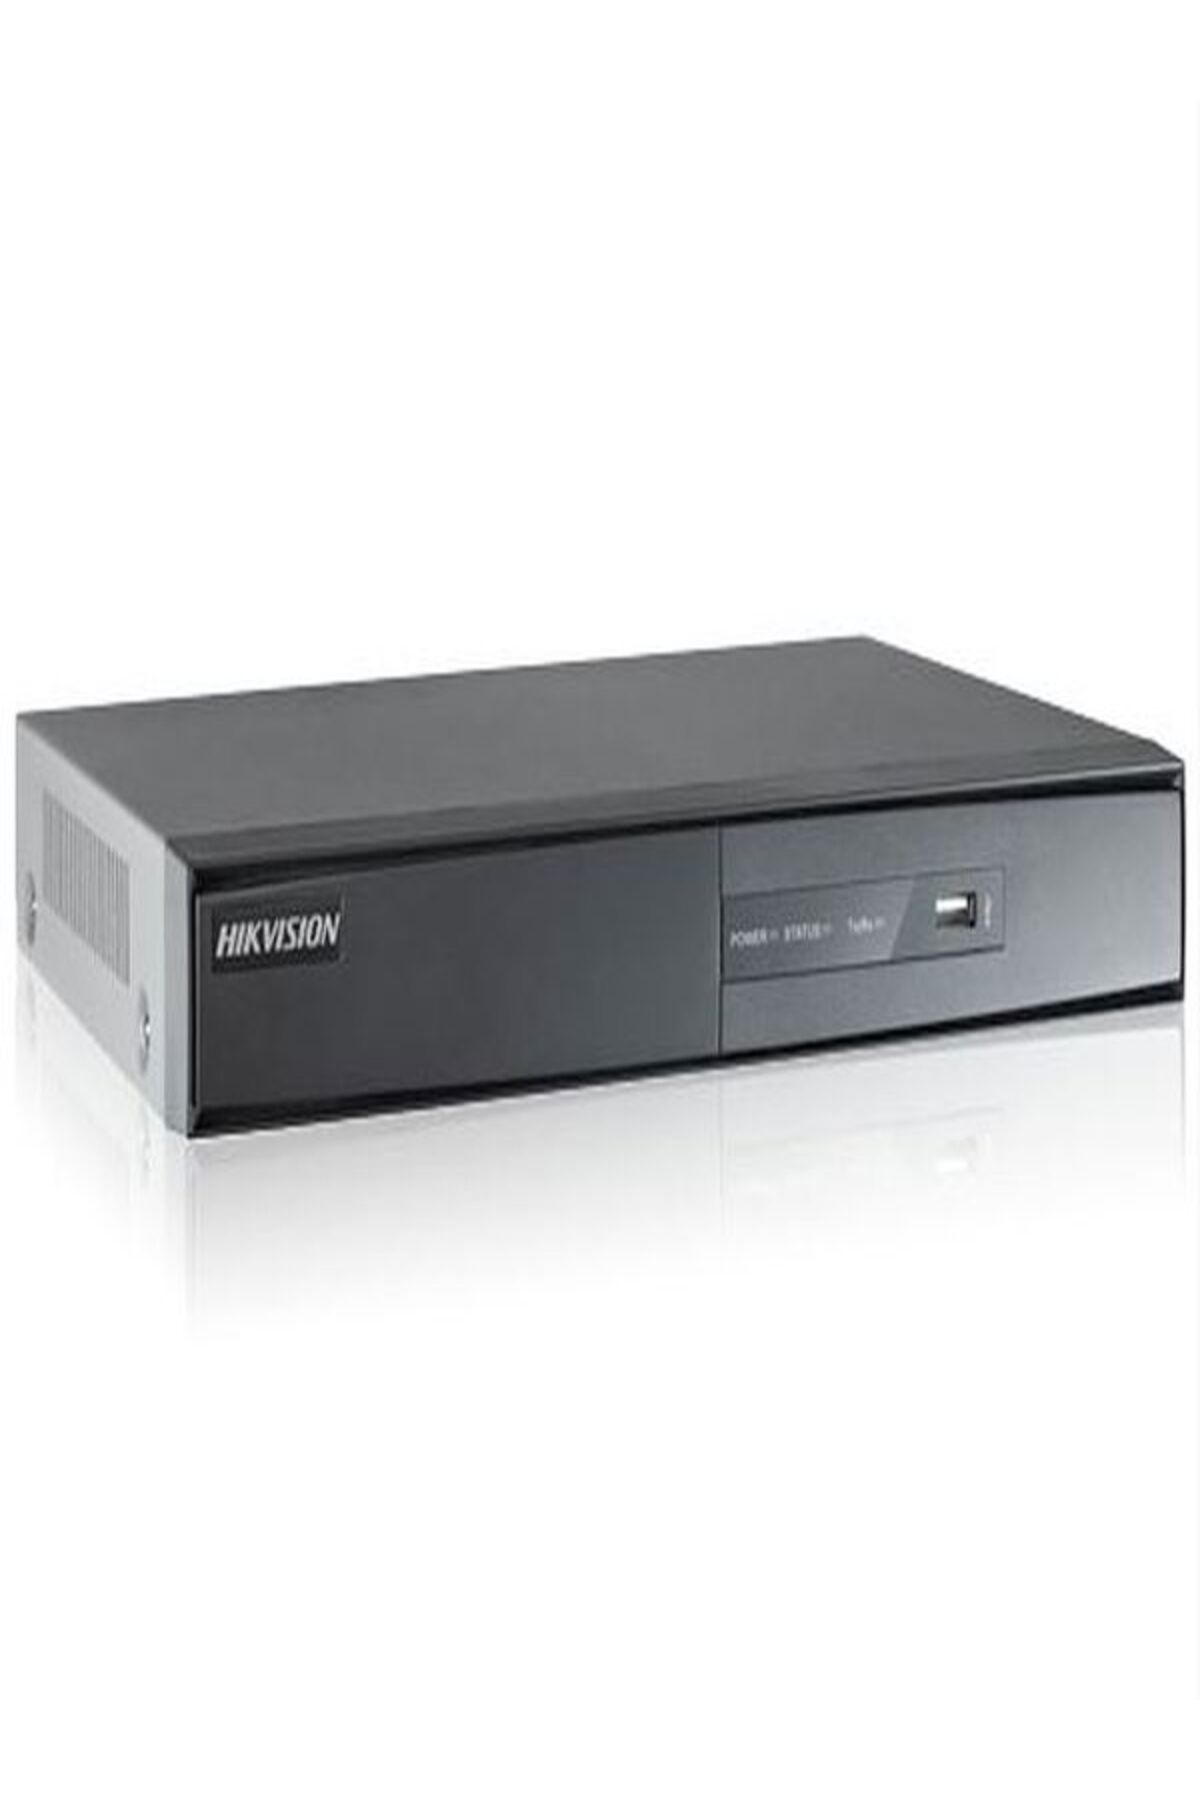 Hikvision HAIKON DS-7208HWI-HI 8 KANAL Hybirt WD1 Kayıt Cihazı DVR